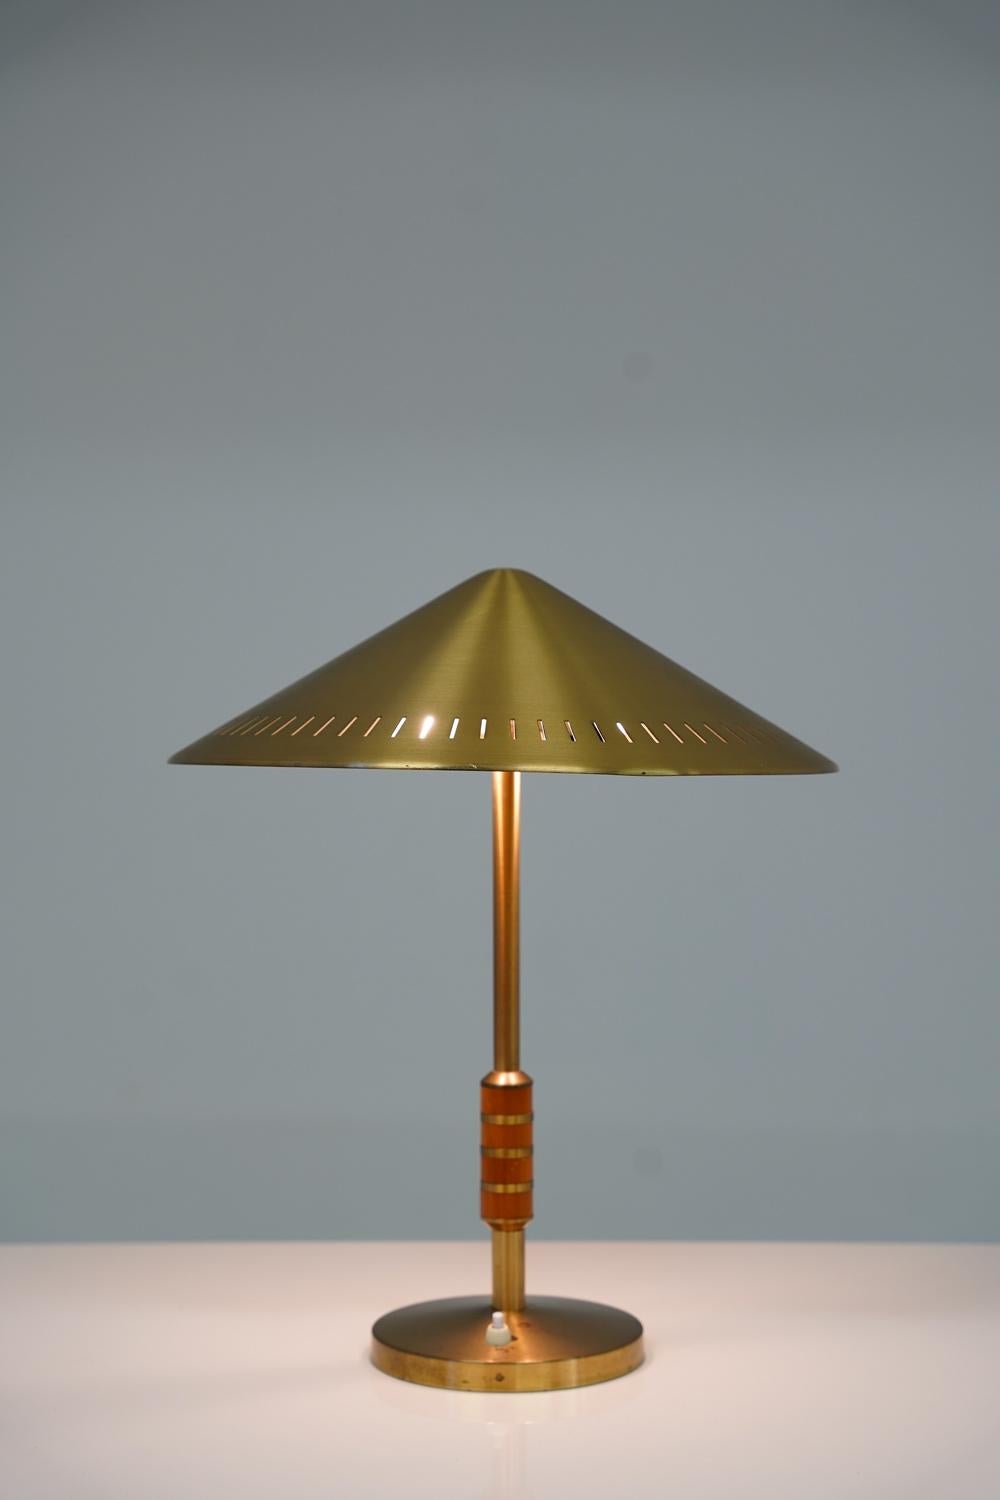 Rare lampe de table modèle 8403 par Boréns, Suède. 
Cette lampe est fabriquée en laiton massif avec des détails en teck et dispose d'un bel abat-jour perforé. 

Condit : Très bon état d'origine avec quelques taches sur la base.